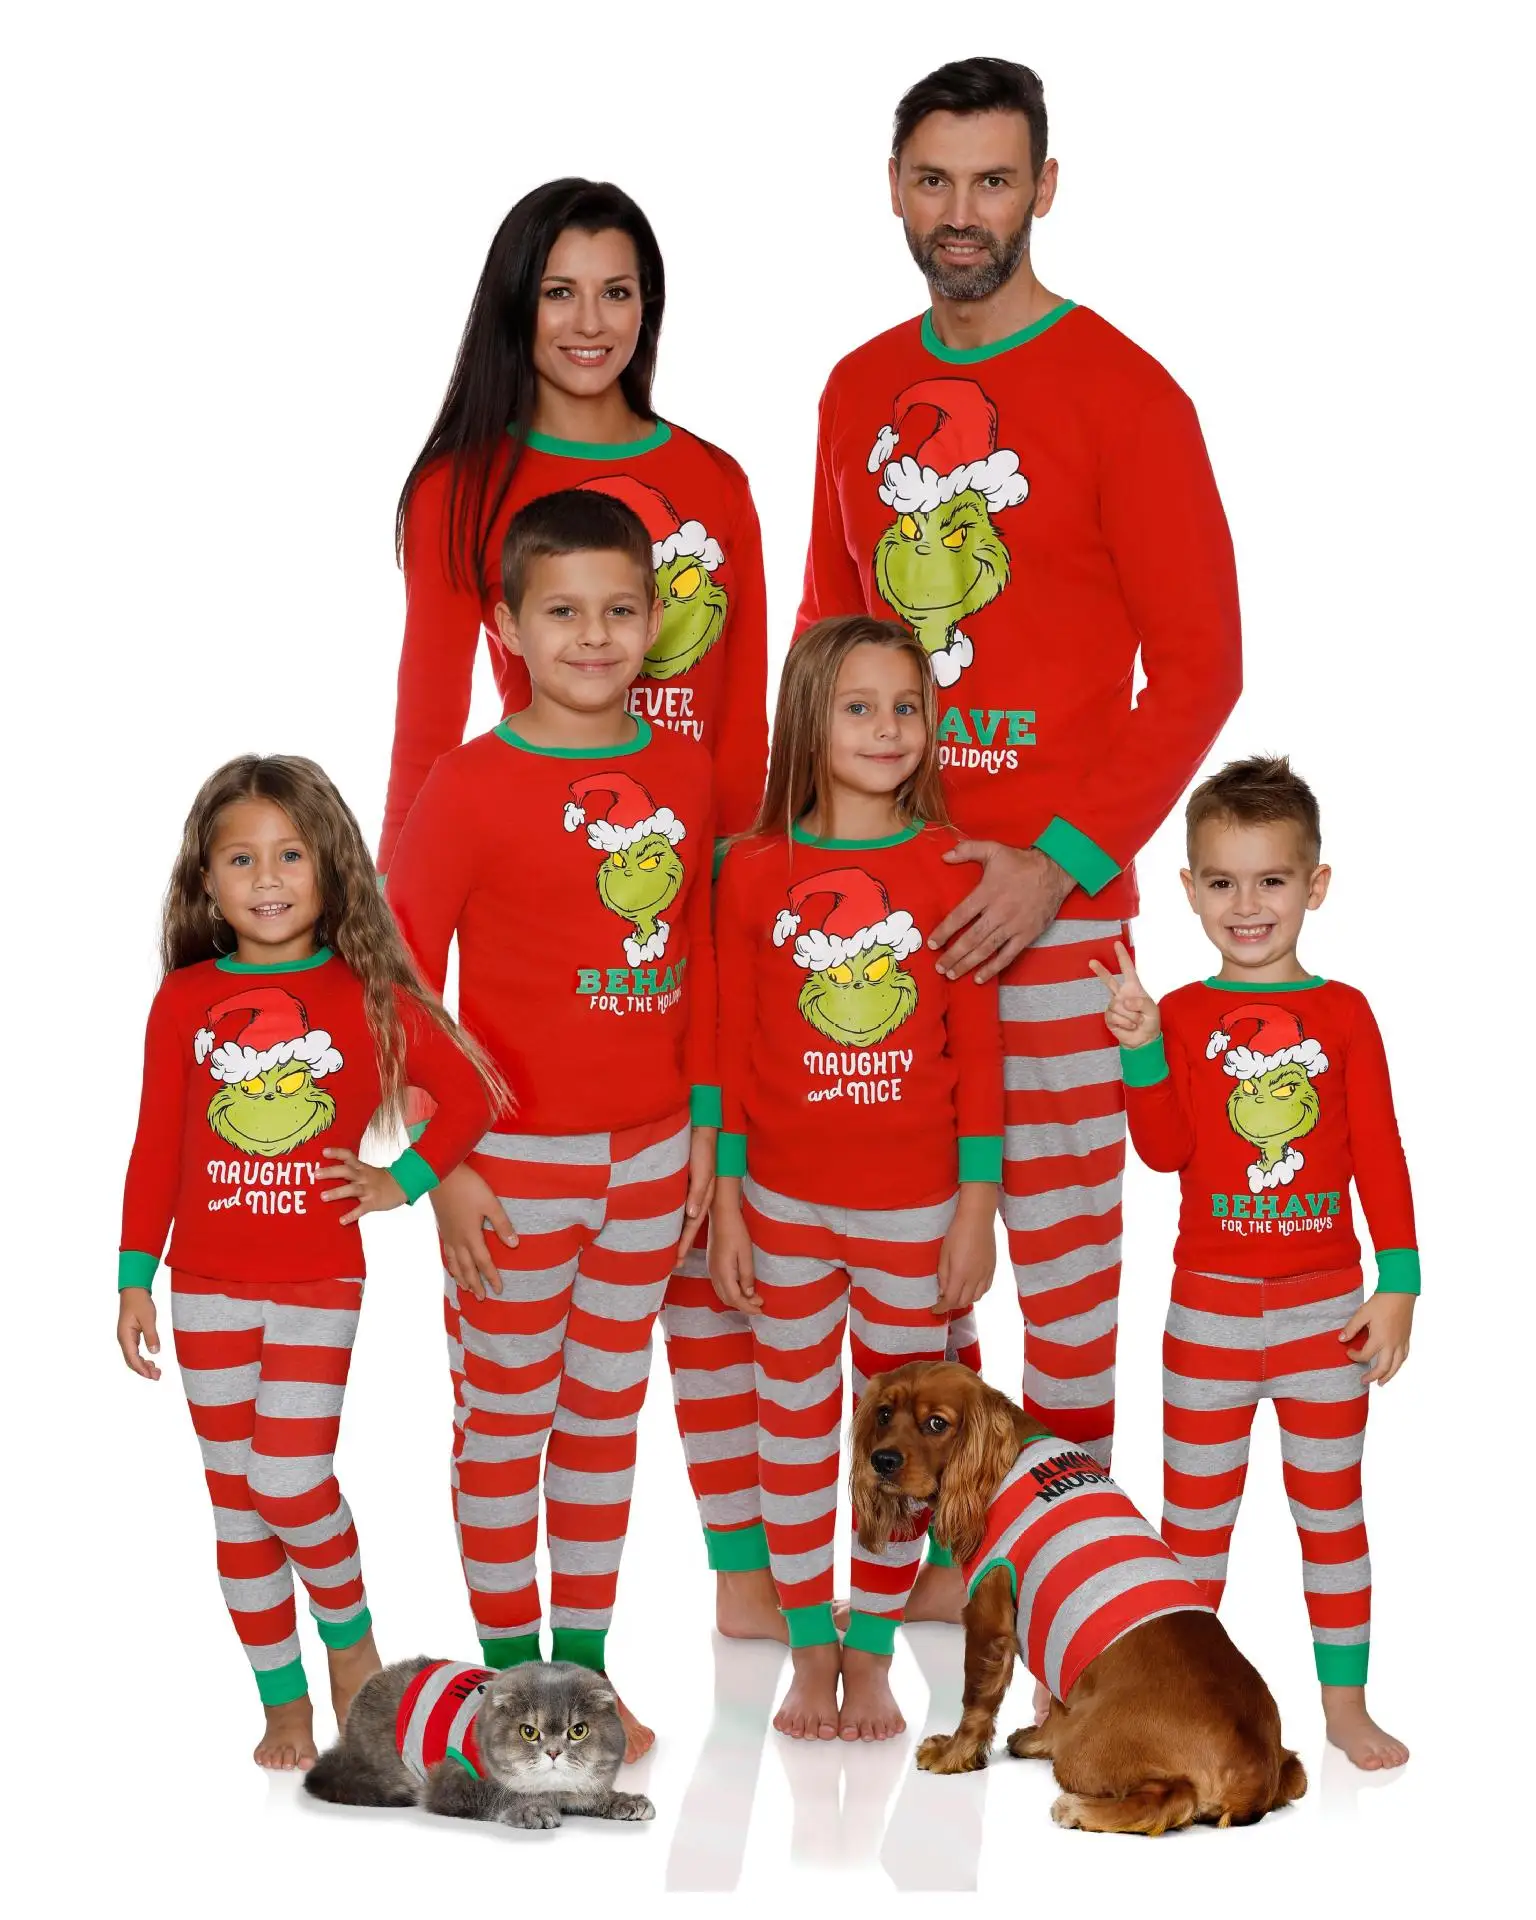 НОВАЯ РОЖДЕСТВЕНСКАЯ одинаковая Рождественская Пижама для всей семьи; Комплект для женщин, мужчин и детей; клетчатая Пижама для всей семьи; комплект детской одежды для фотосессии; CA411